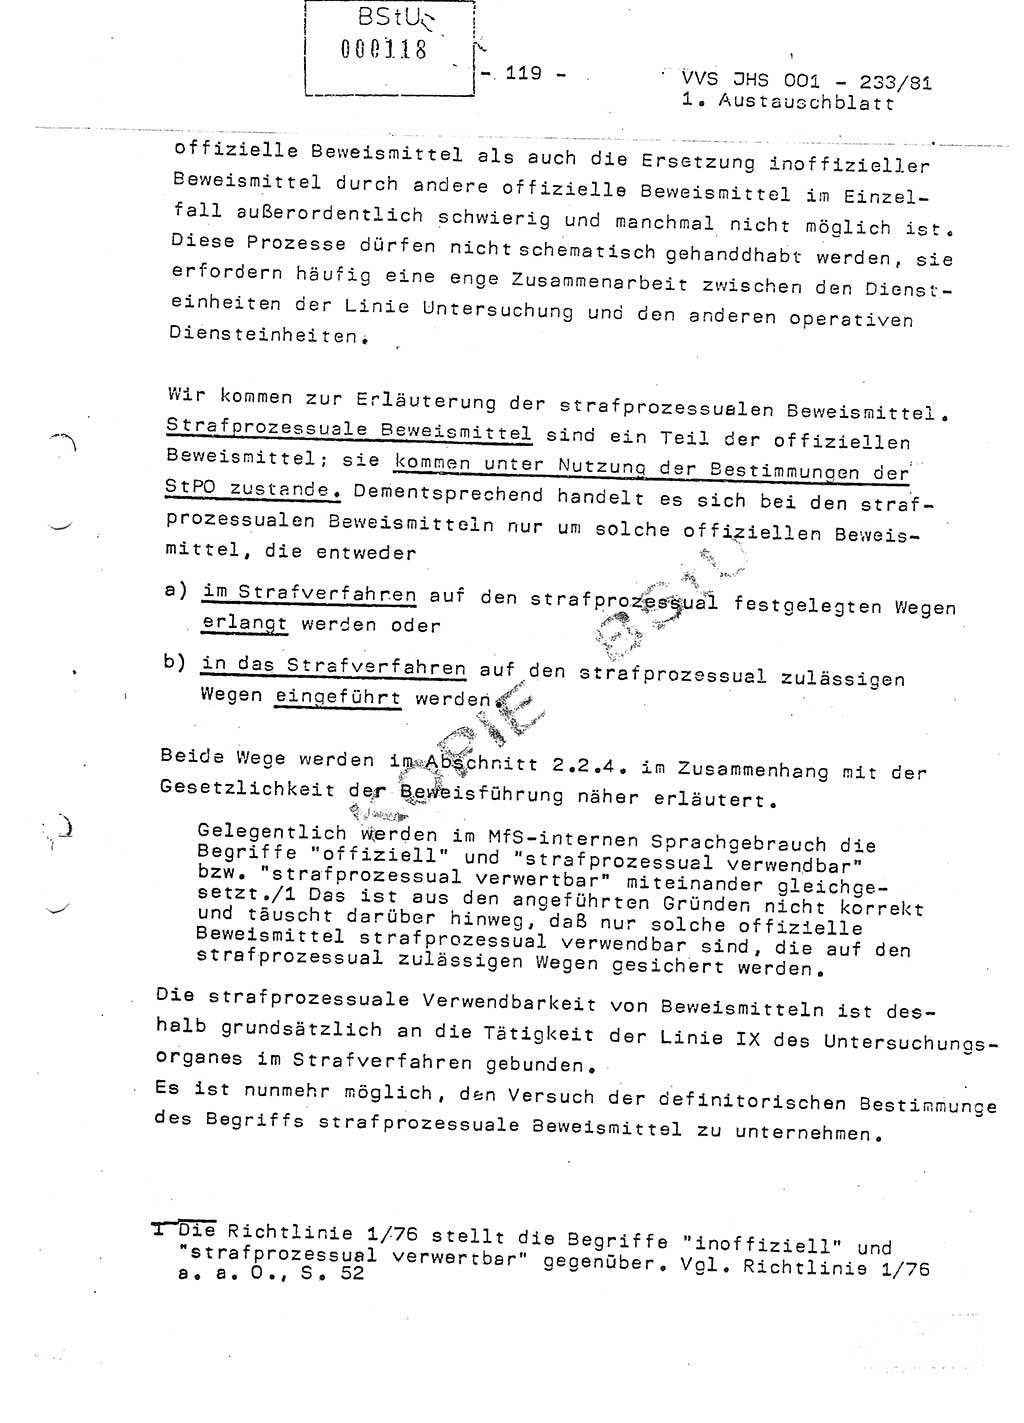 Dissertation Oberstleutnant Horst Zank (JHS), Oberstleutnant Dr. Karl-Heinz Knoblauch (JHS), Oberstleutnant Gustav-Adolf Kowalewski (HA Ⅸ), Oberstleutnant Wolfgang Plötner (HA Ⅸ), Ministerium für Staatssicherheit (MfS) [Deutsche Demokratische Republik (DDR)], Juristische Hochschule (JHS), Vertrauliche Verschlußsache (VVS) o001-233/81, Potsdam 1981, Blatt 119 (Diss. MfS DDR JHS VVS o001-233/81 1981, Bl. 119)